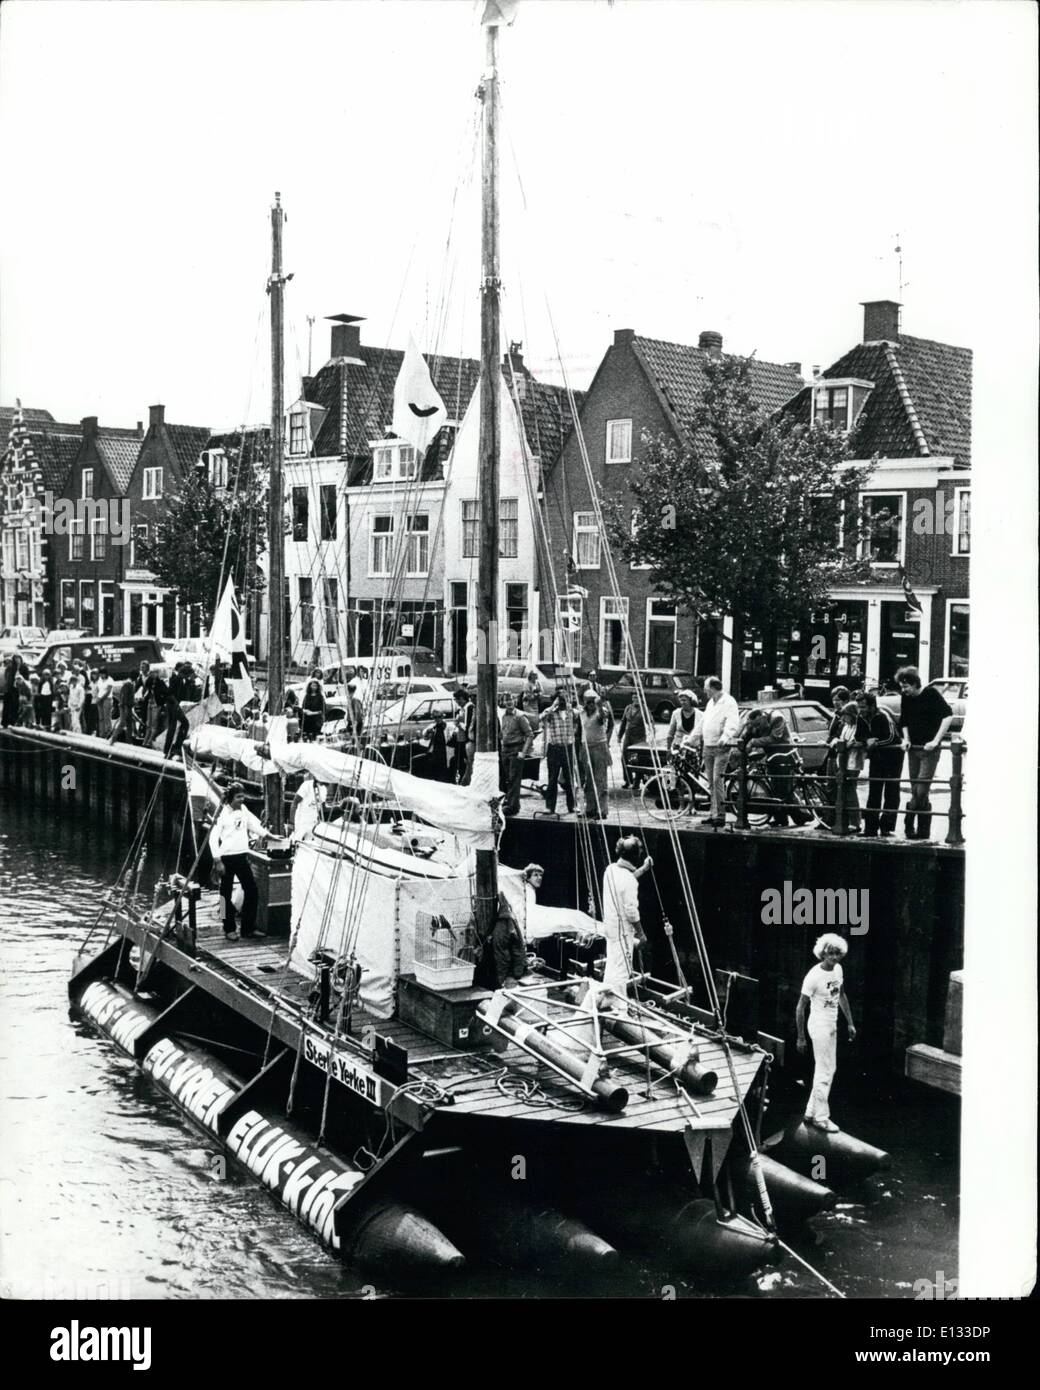 Febrero 26, 2012 - Self-made de balsa para cruzar el Atlántico: el self-made balsa llamados ''Sterke Yerke aguarï mal" por cuatro estudiantes holandeses dejando el dockside en Den Helder, al inicio de su viaje de 5.000 millas a través del Atlántico. Foto de stock